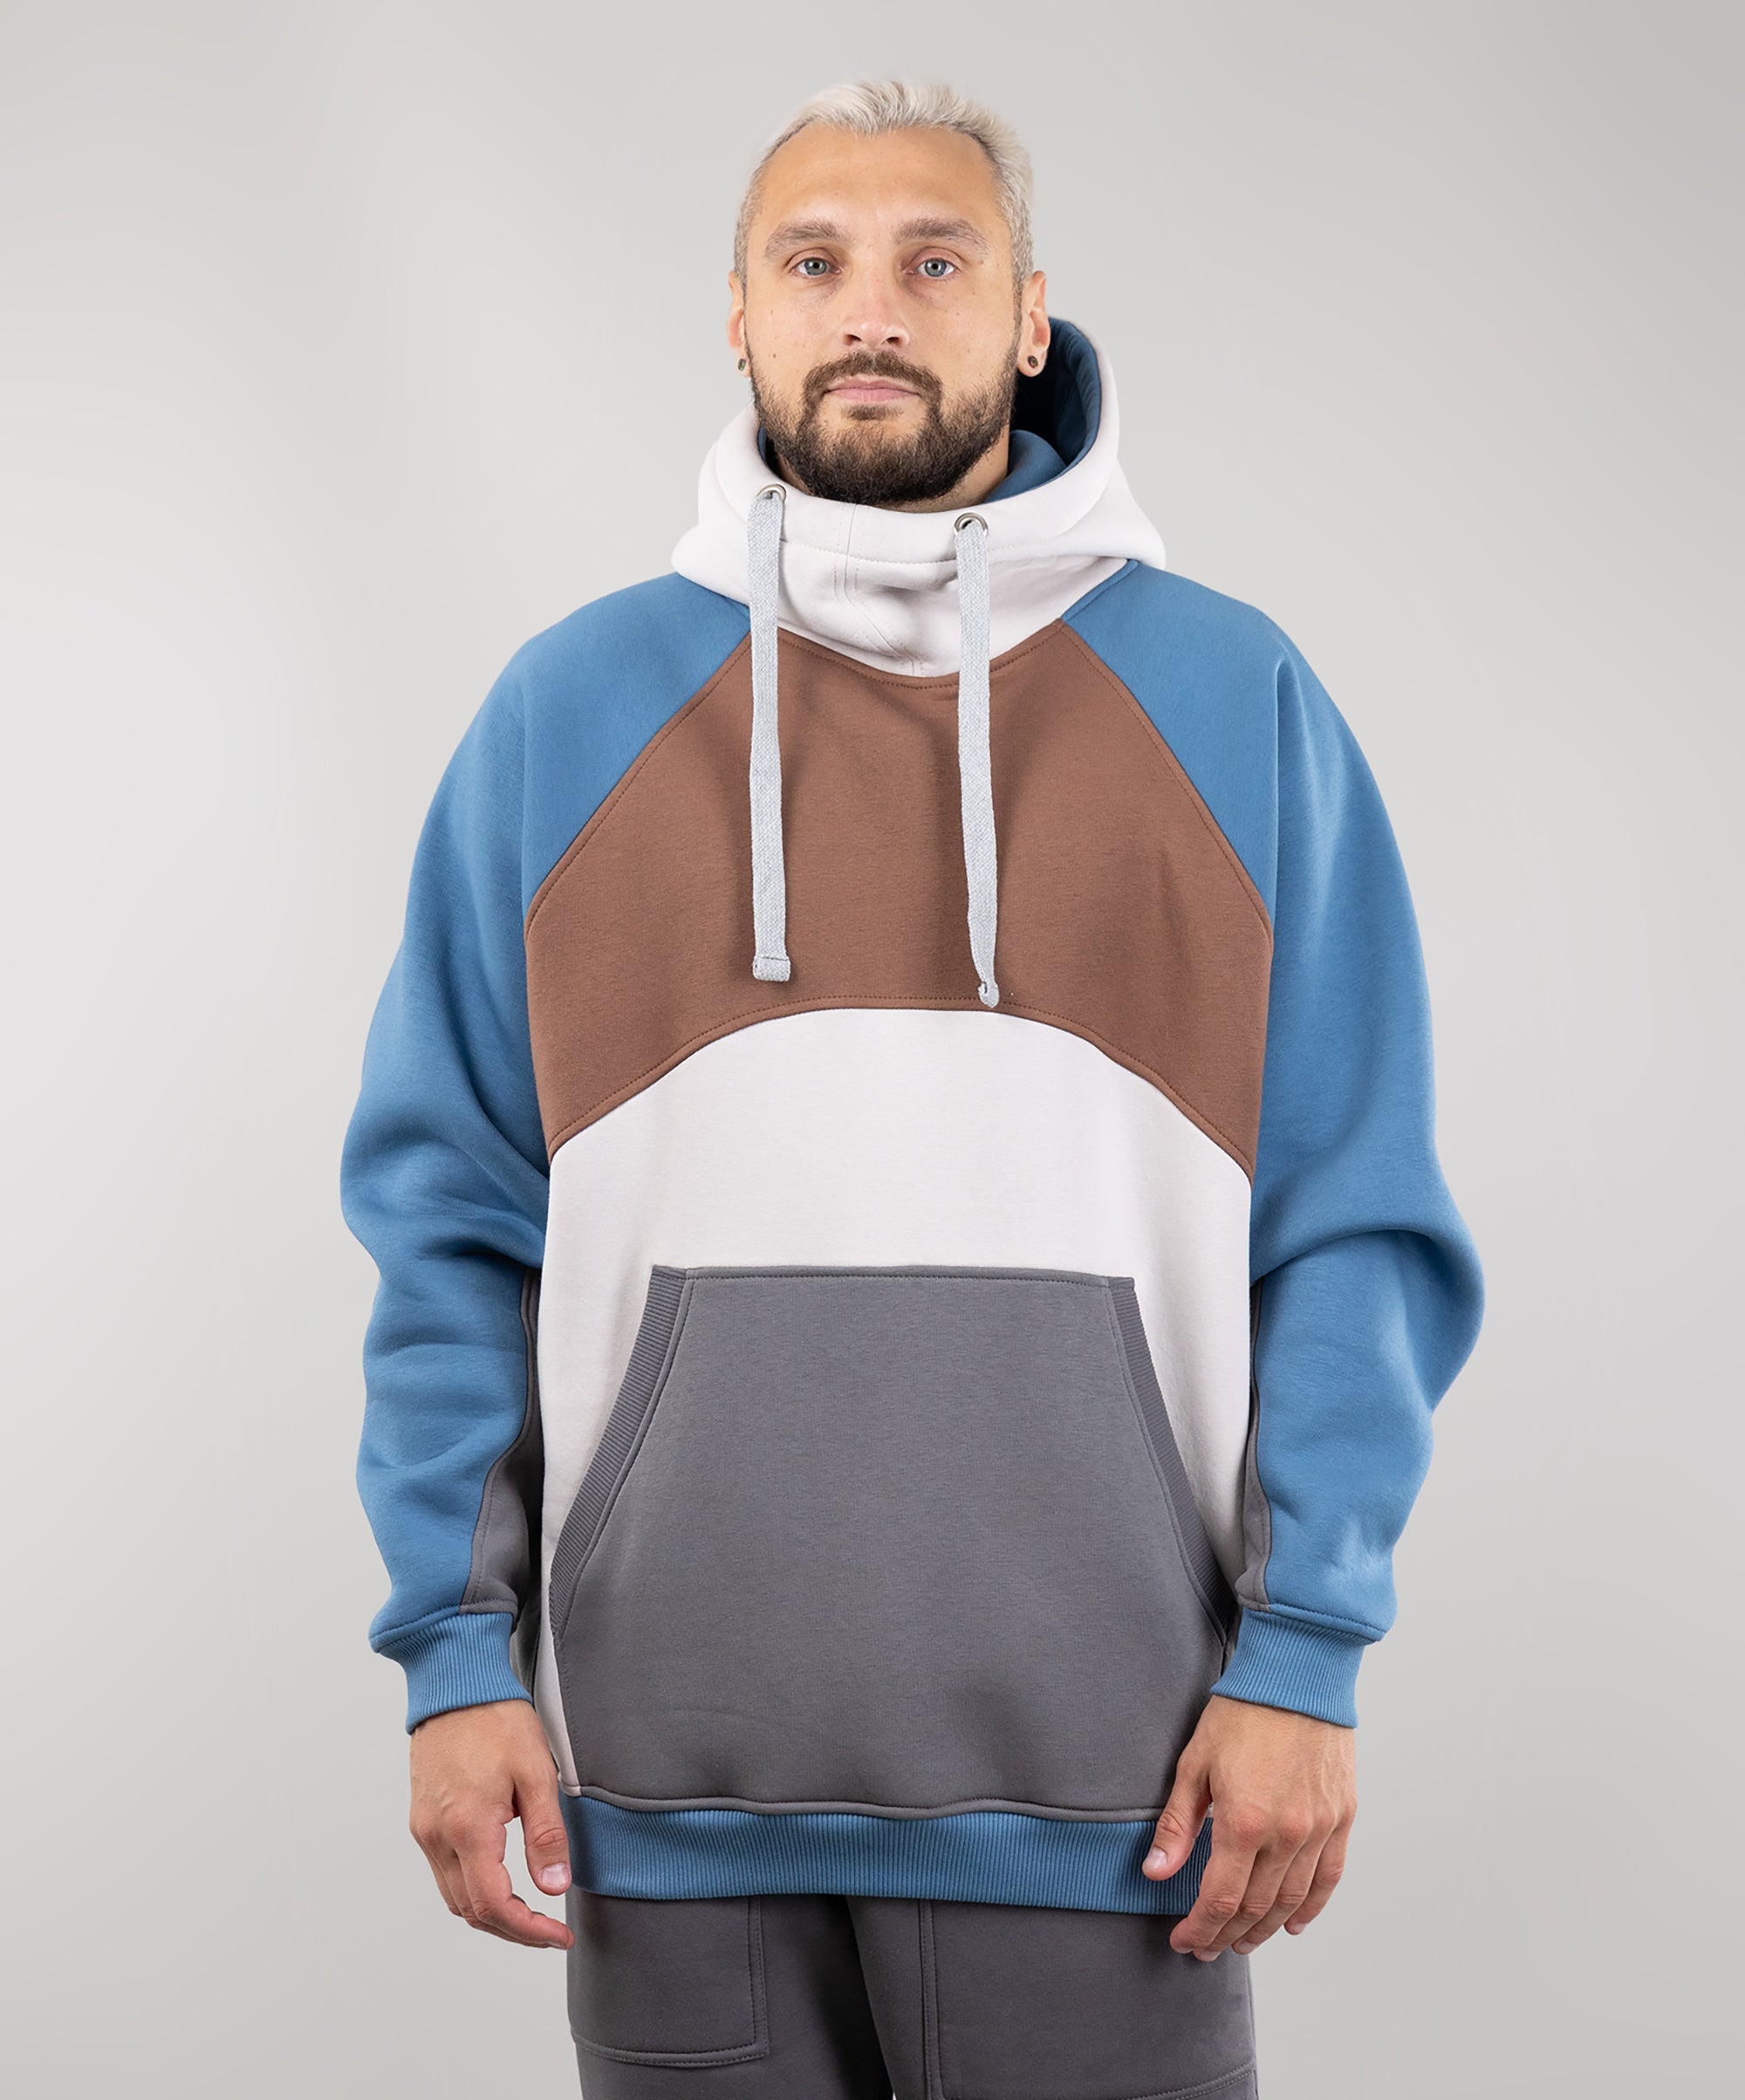 Hoodie "Umka", warm oversize hoodie.  Brown/Cream/Blue. Man in Front